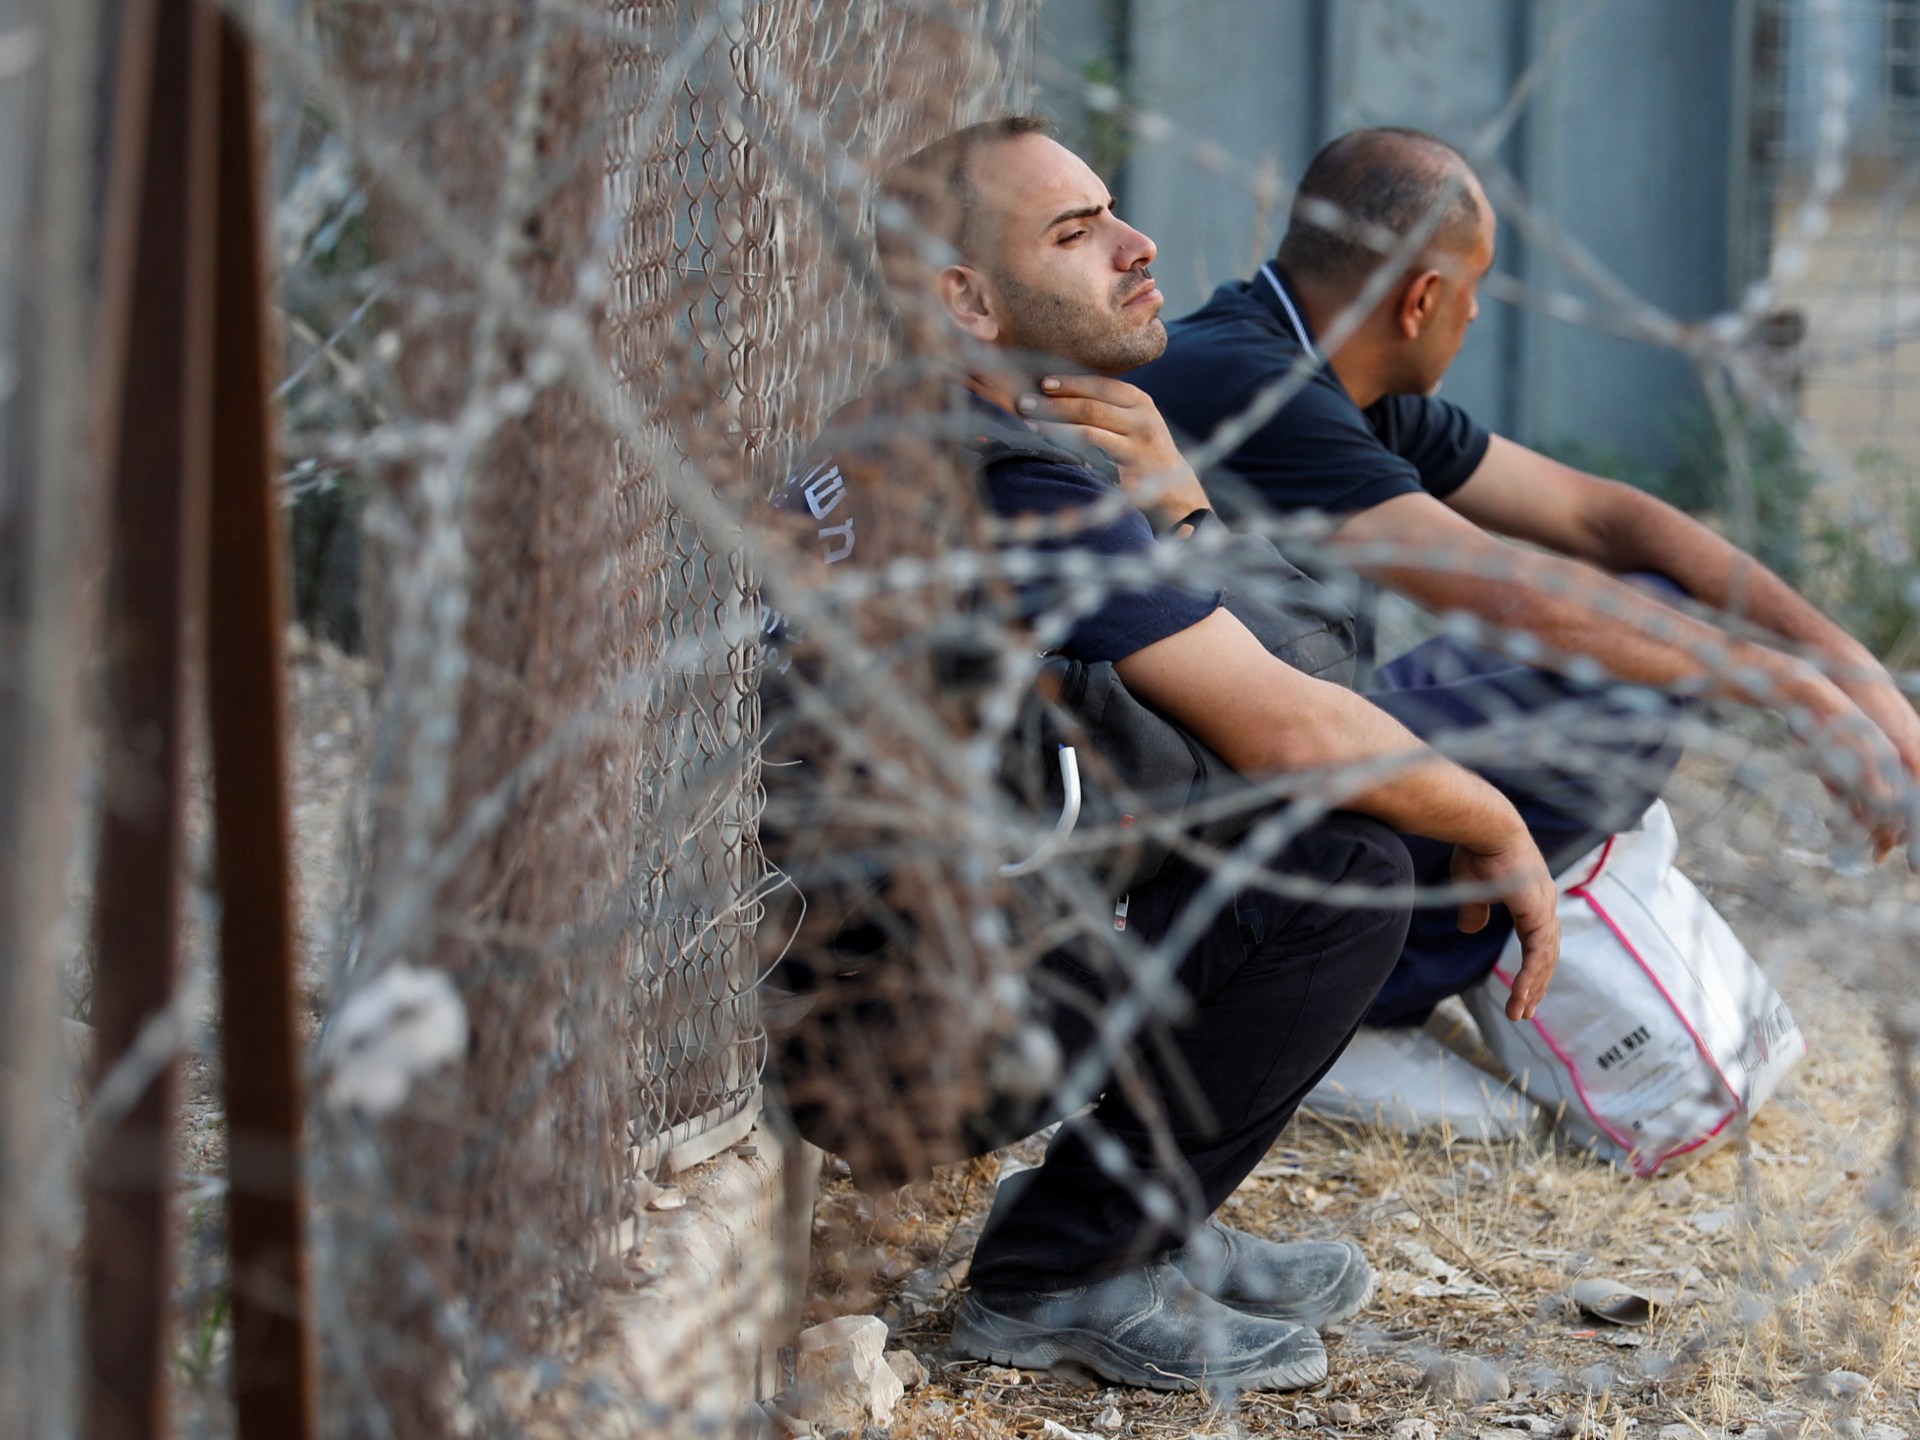 مستقبل مجهول للعمال الفلسطينيين في أراضي الـ48 | أخبار – البوكس نيوز